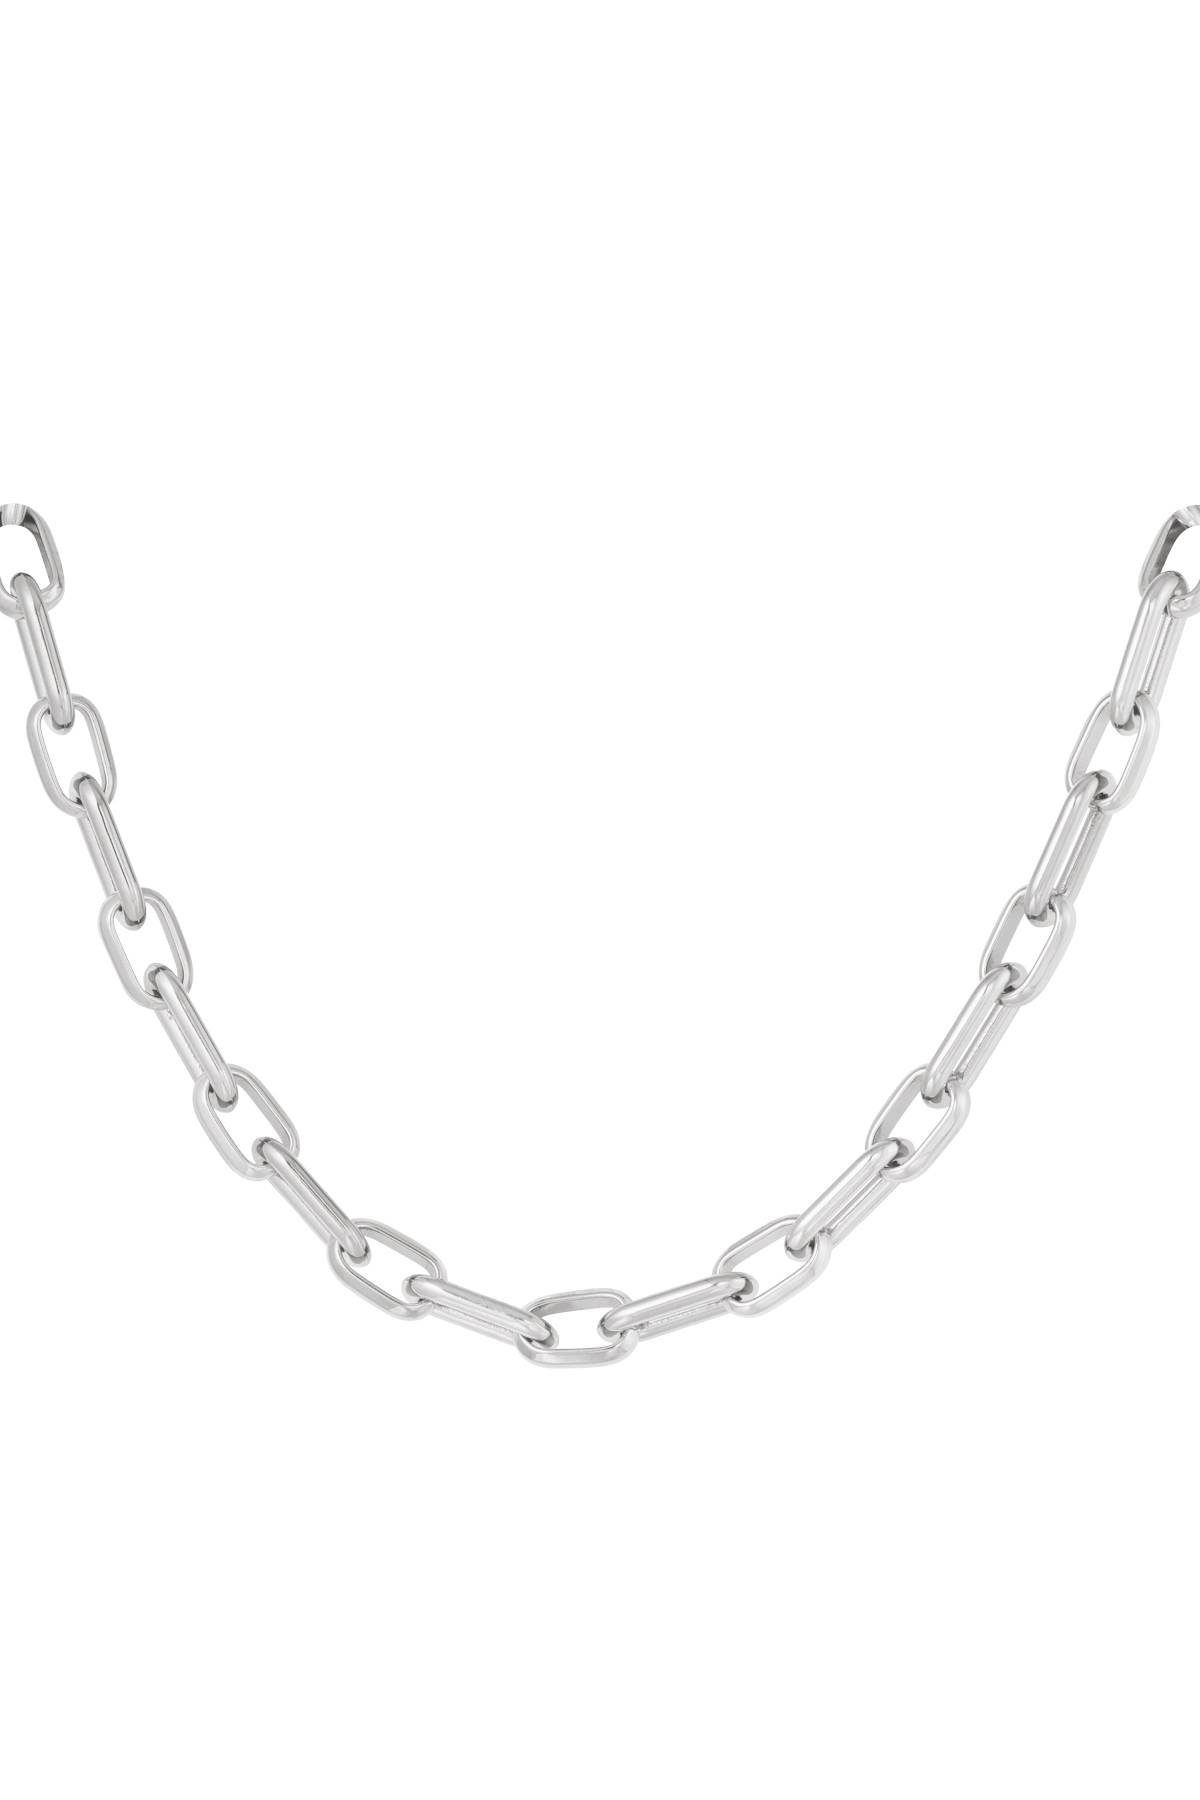 Halskette mit länglichen Gliedern und Anhängern – Silber h5 